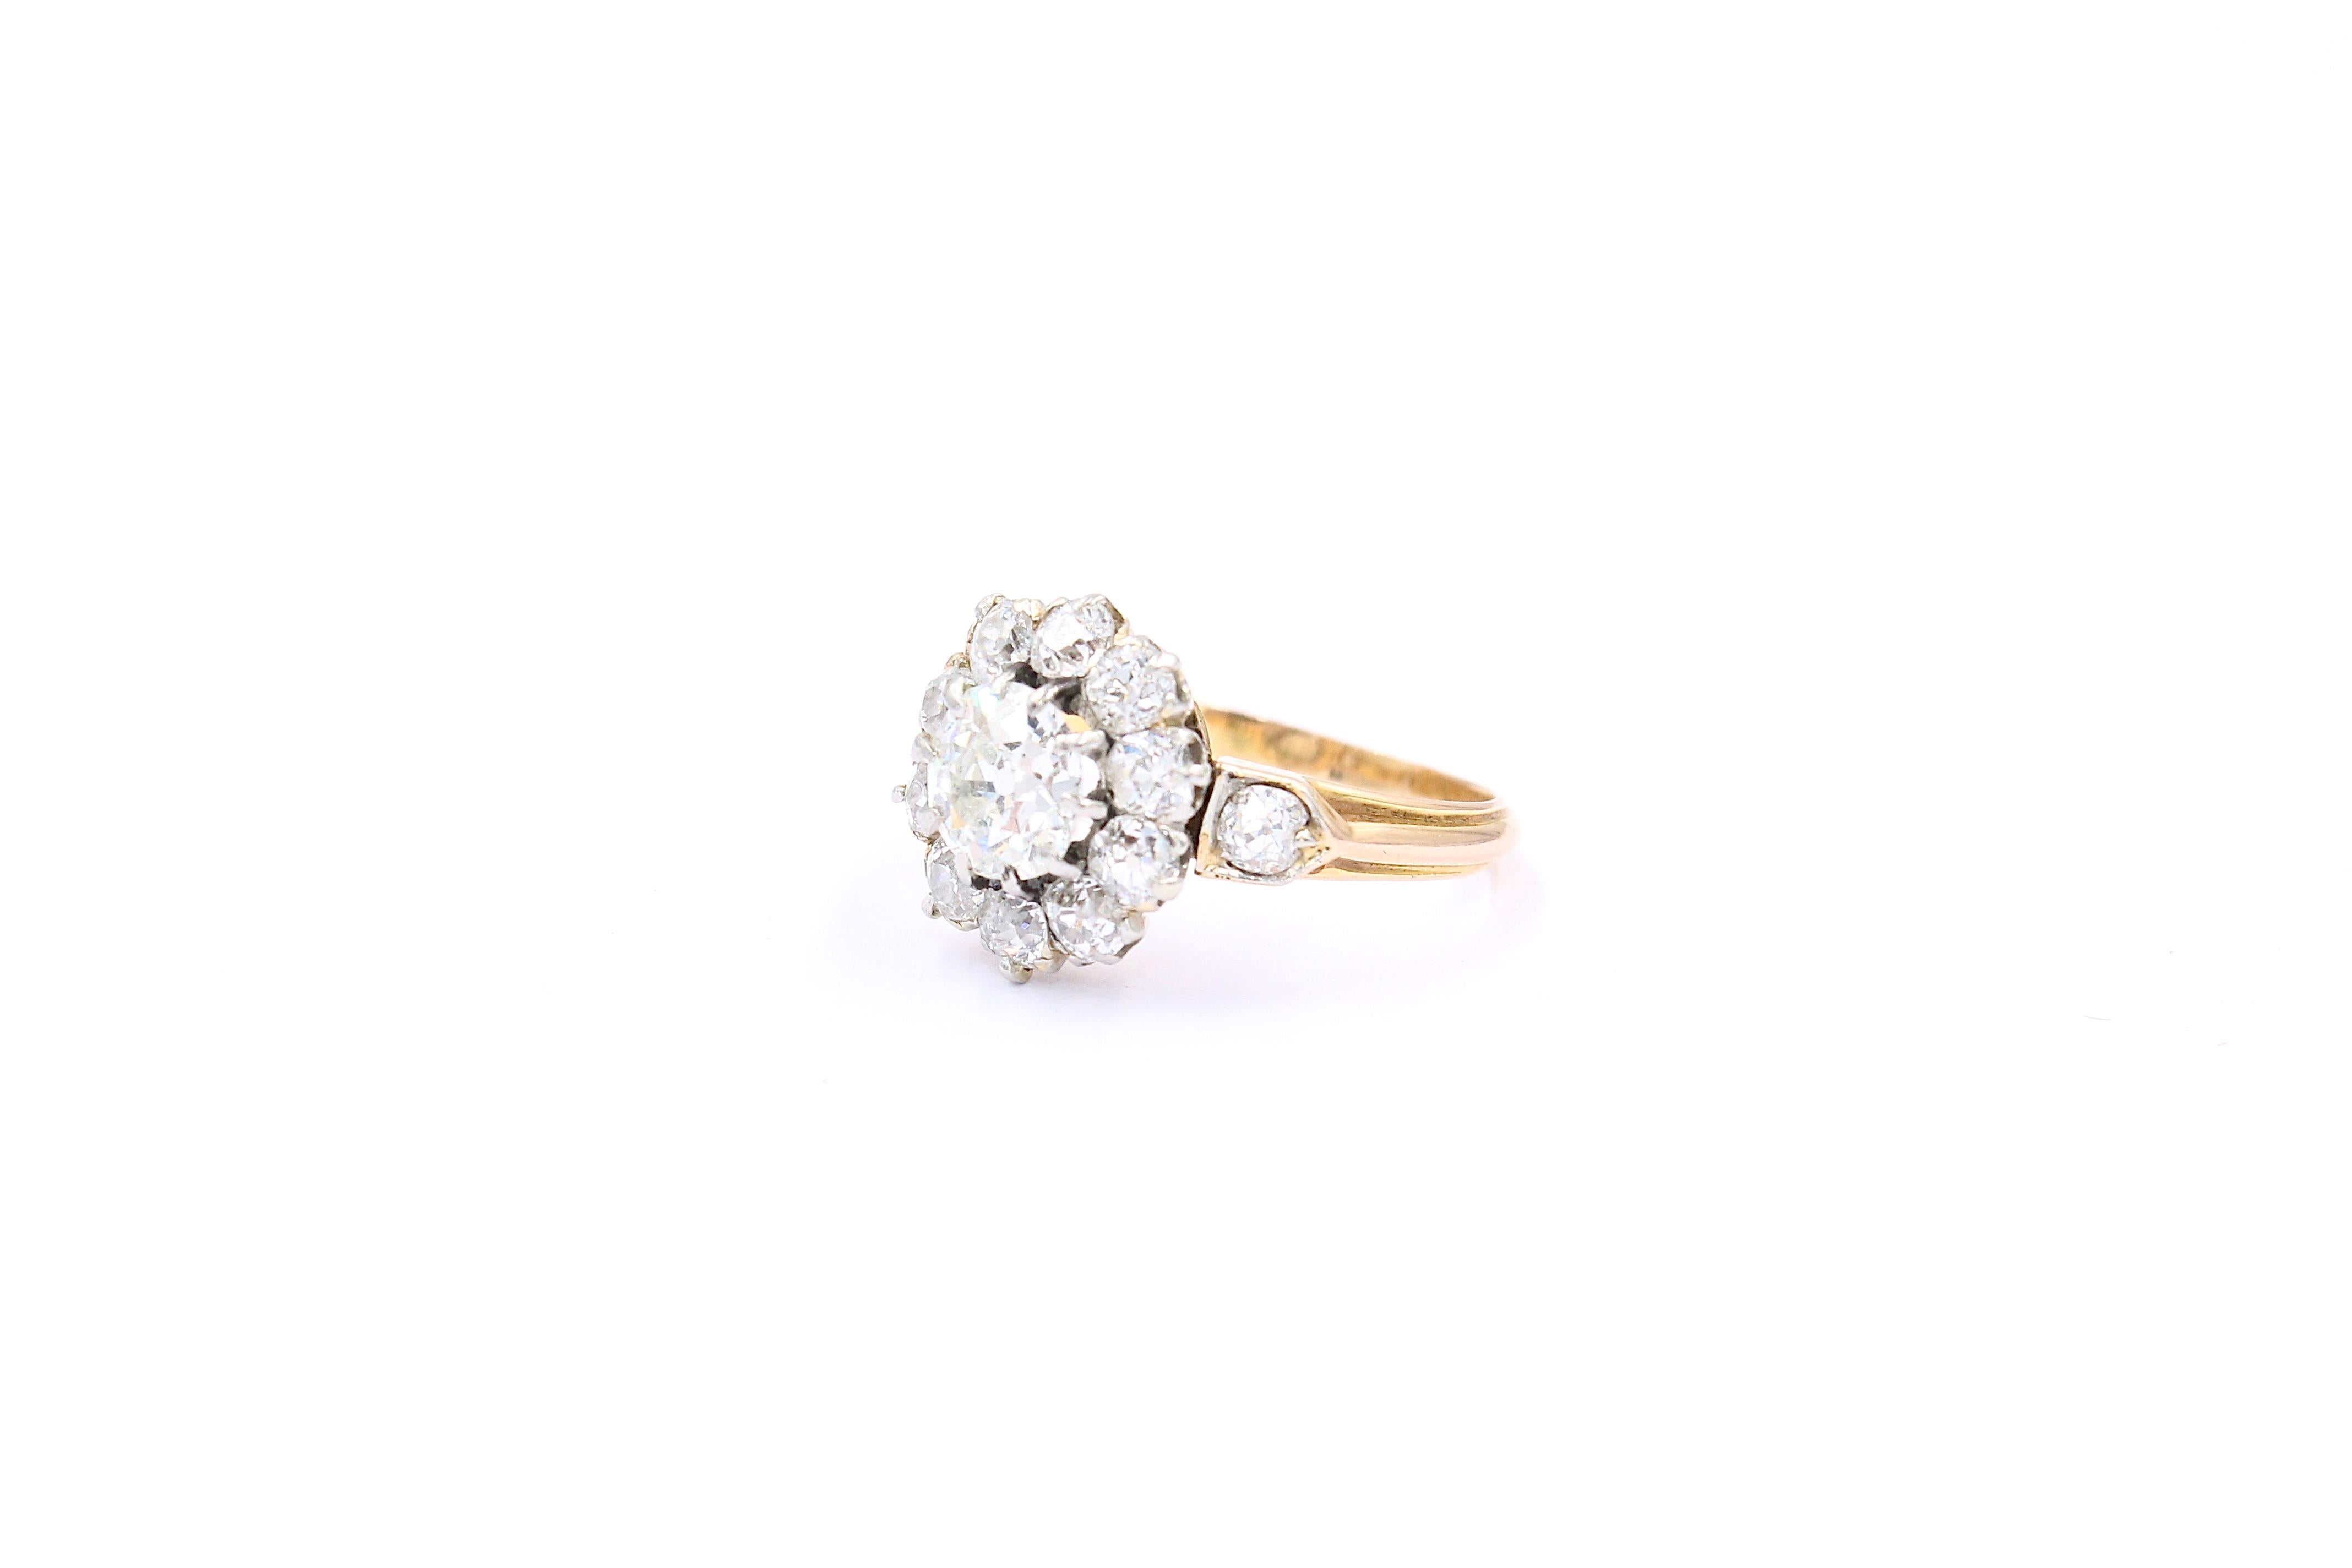 Antiker Franche Belle Epoque Diamant-Cluster-Ring um 1910 in perfektem Zustand. 

Der Ring ist mit einem zentralen altgeschliffenen Diamanten von ca. 0,90 Karat (geschätzte Farbe G - Reinheit Si) und 12 altgeschliffenen Diamanten von insgesamt ca.